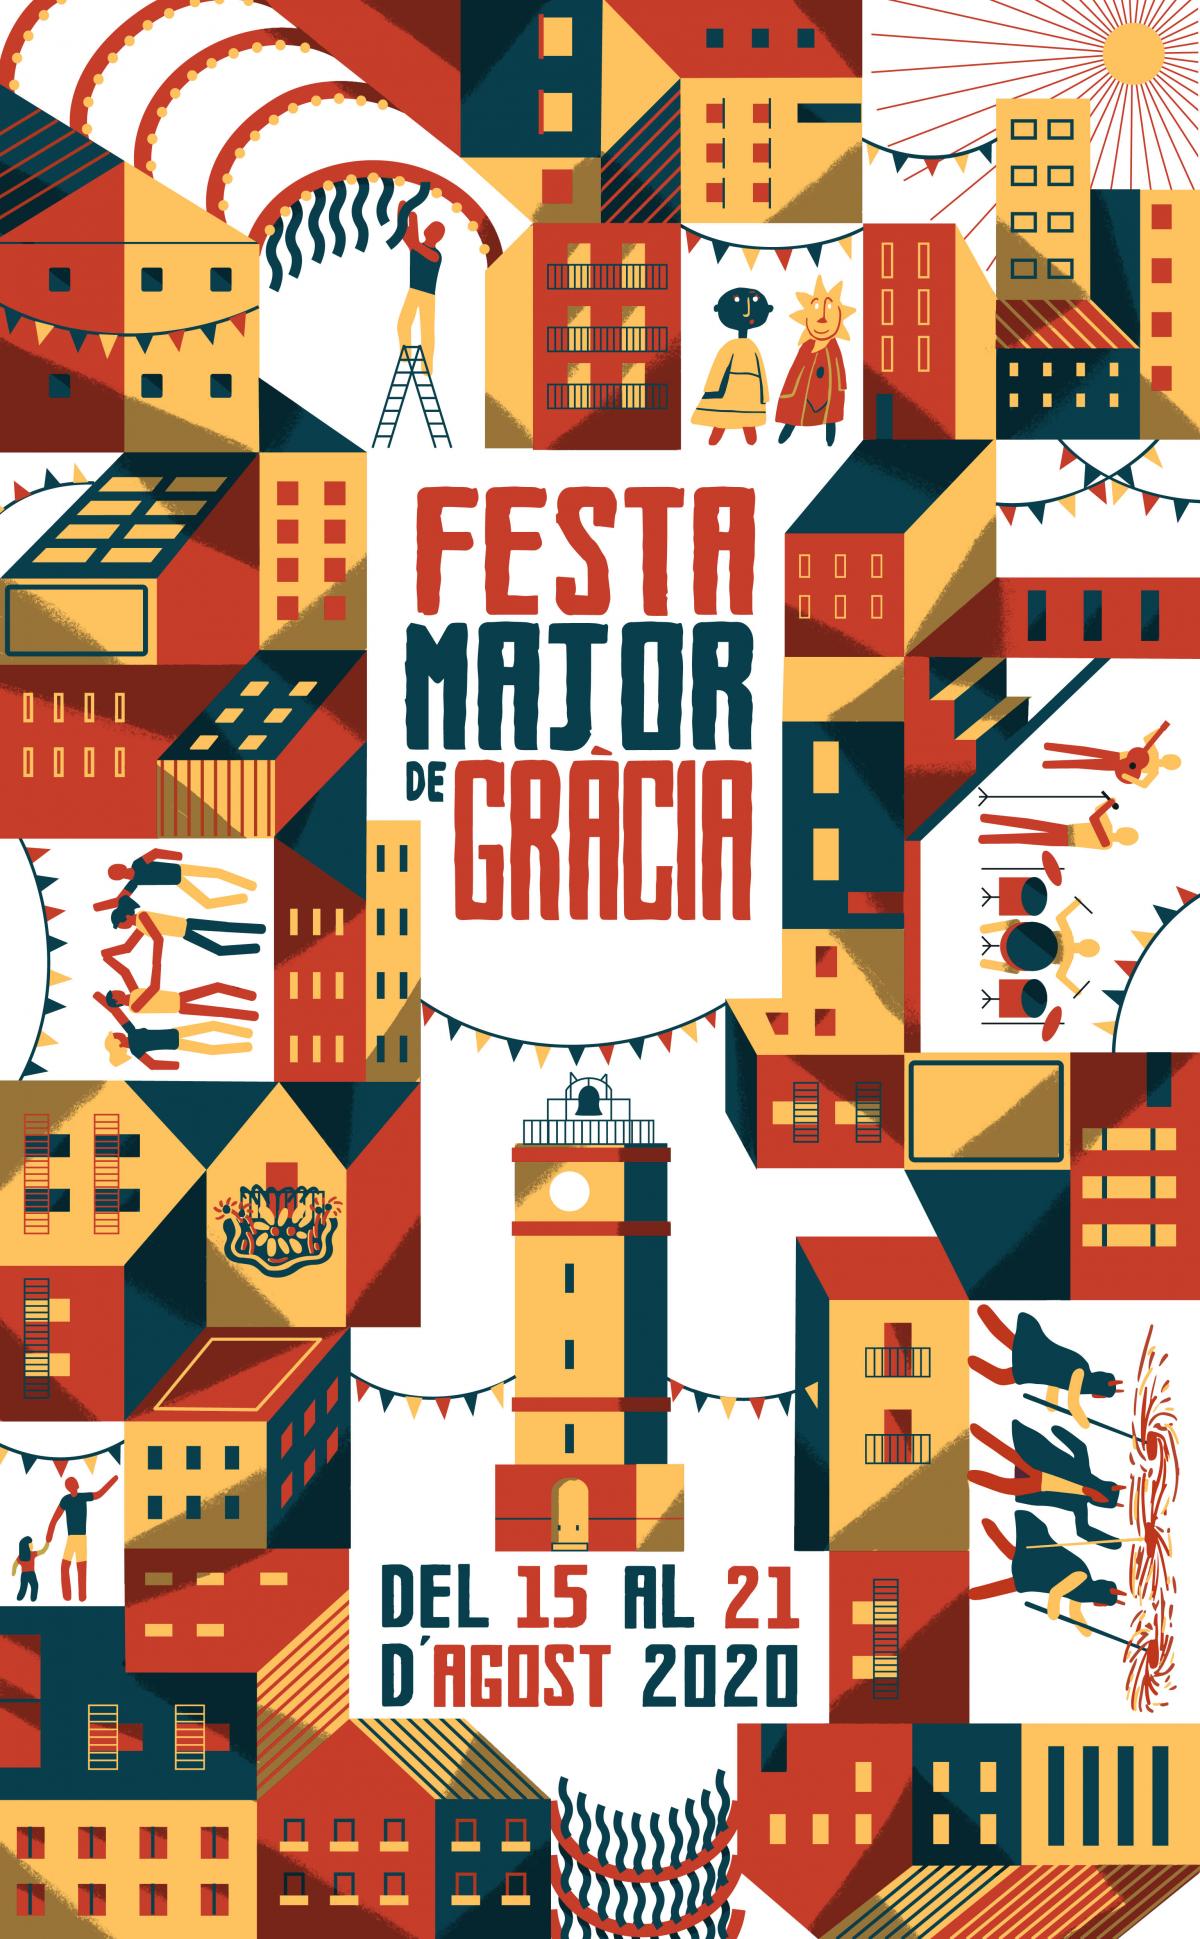 Fiesta Mayor de Gracia by Gratis in Barcelona